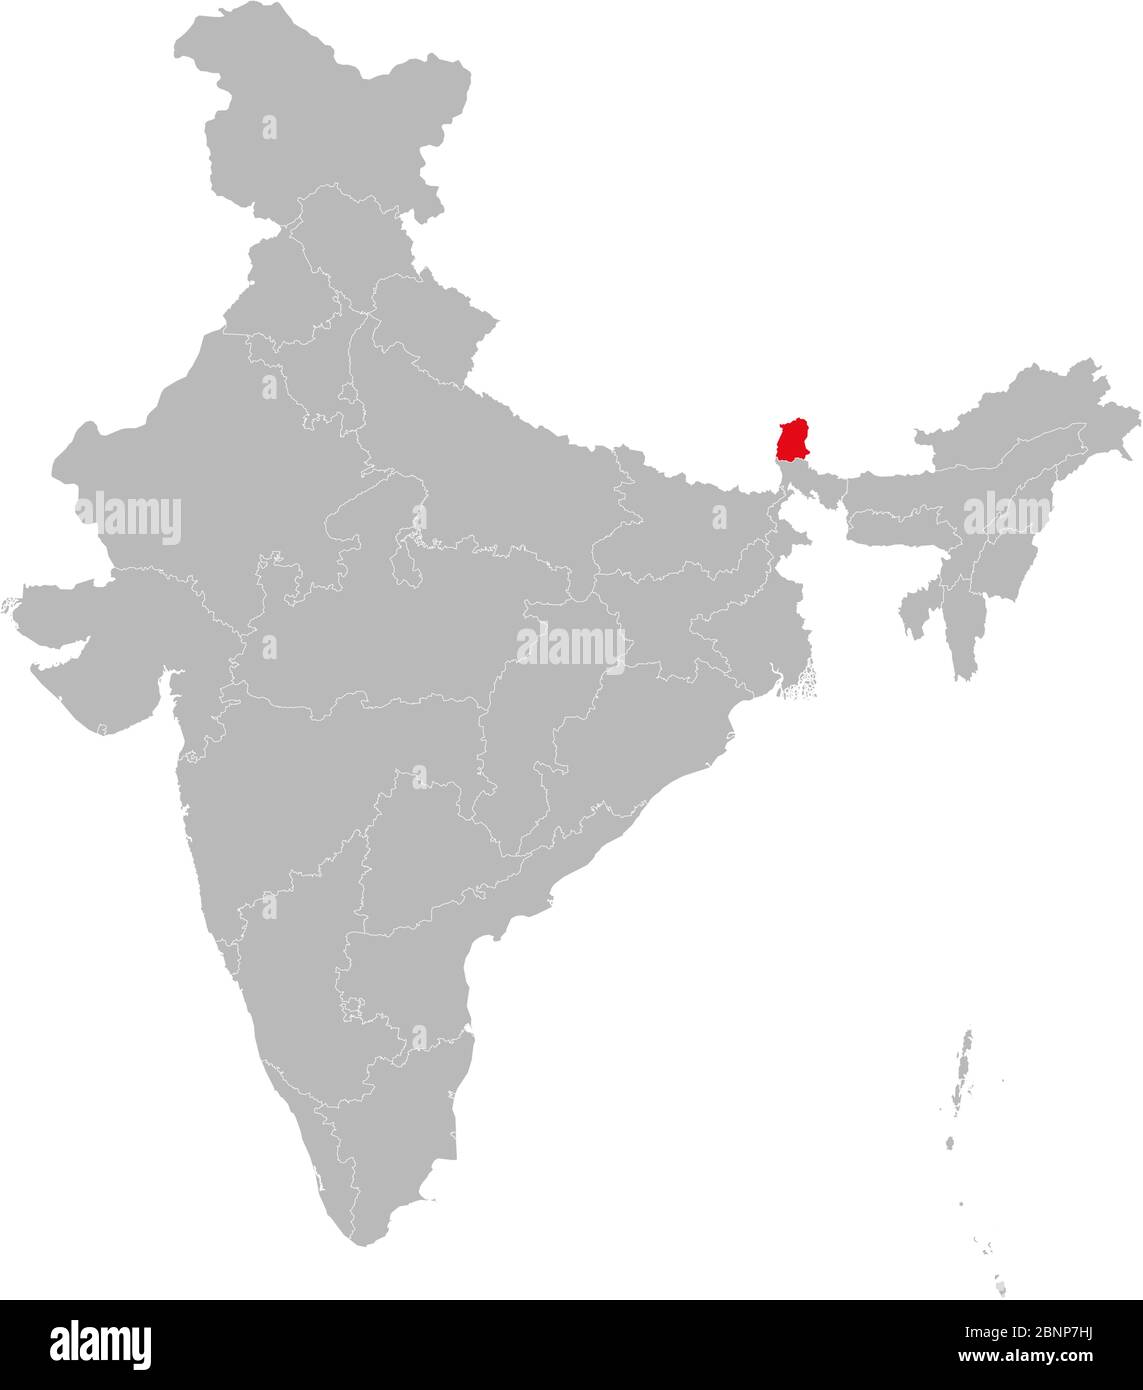 Stato del Nord Est sikkim evidenziato sulla mappa dell'india. Sfondo grigio chiaro. Illustrazione Vettoriale